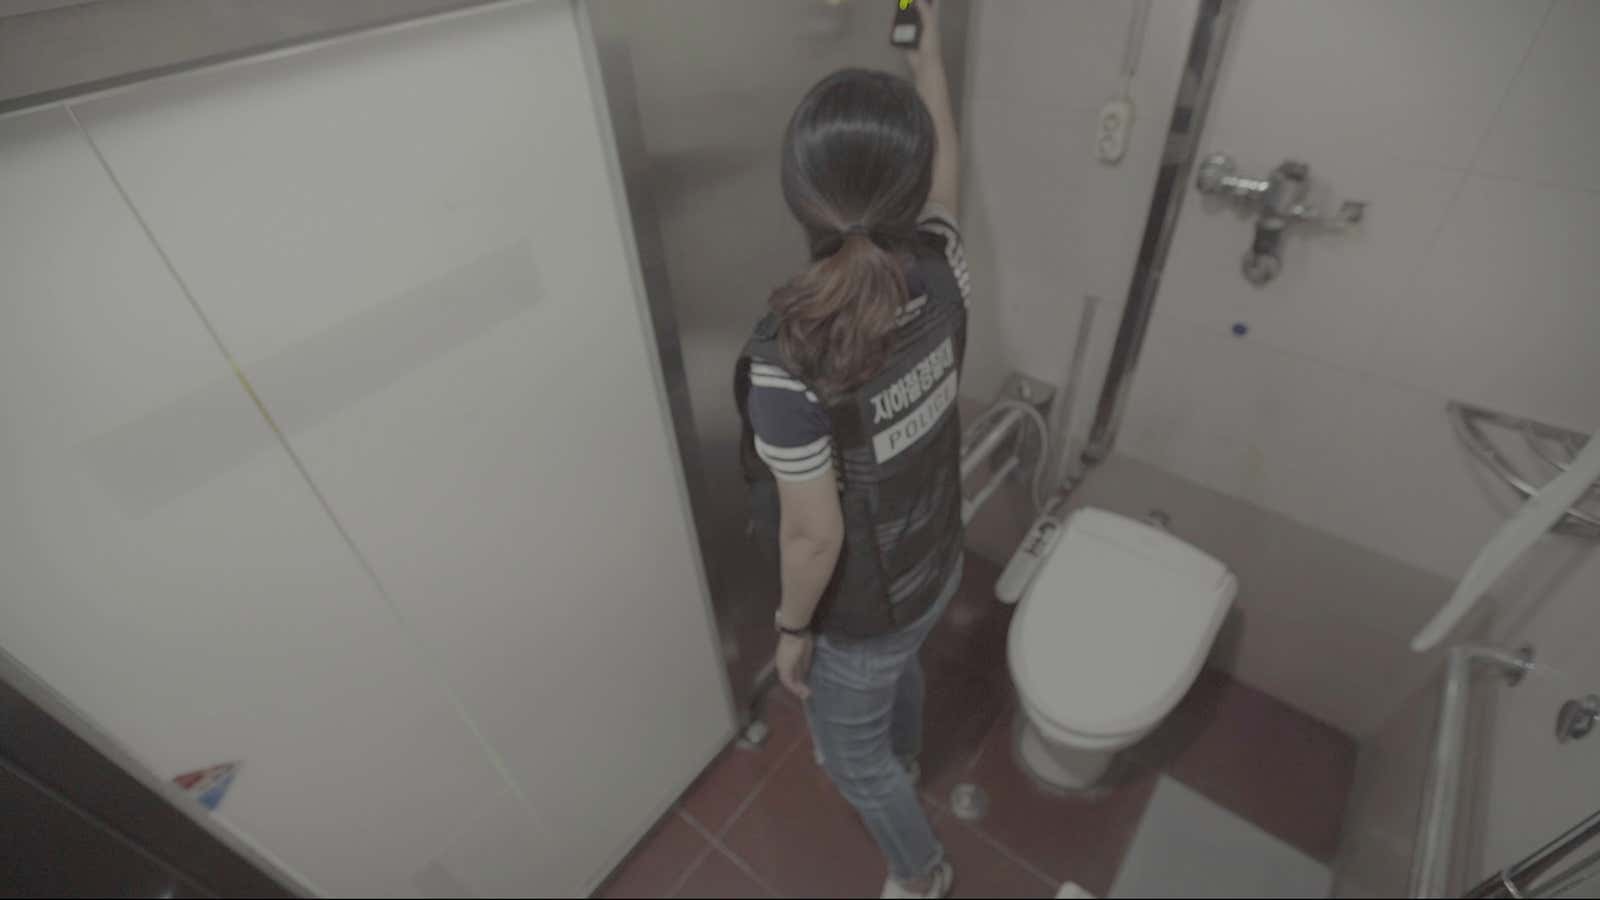 Spy Porn Cam - South Korean women dread public bathrooms because of spy-cam porn